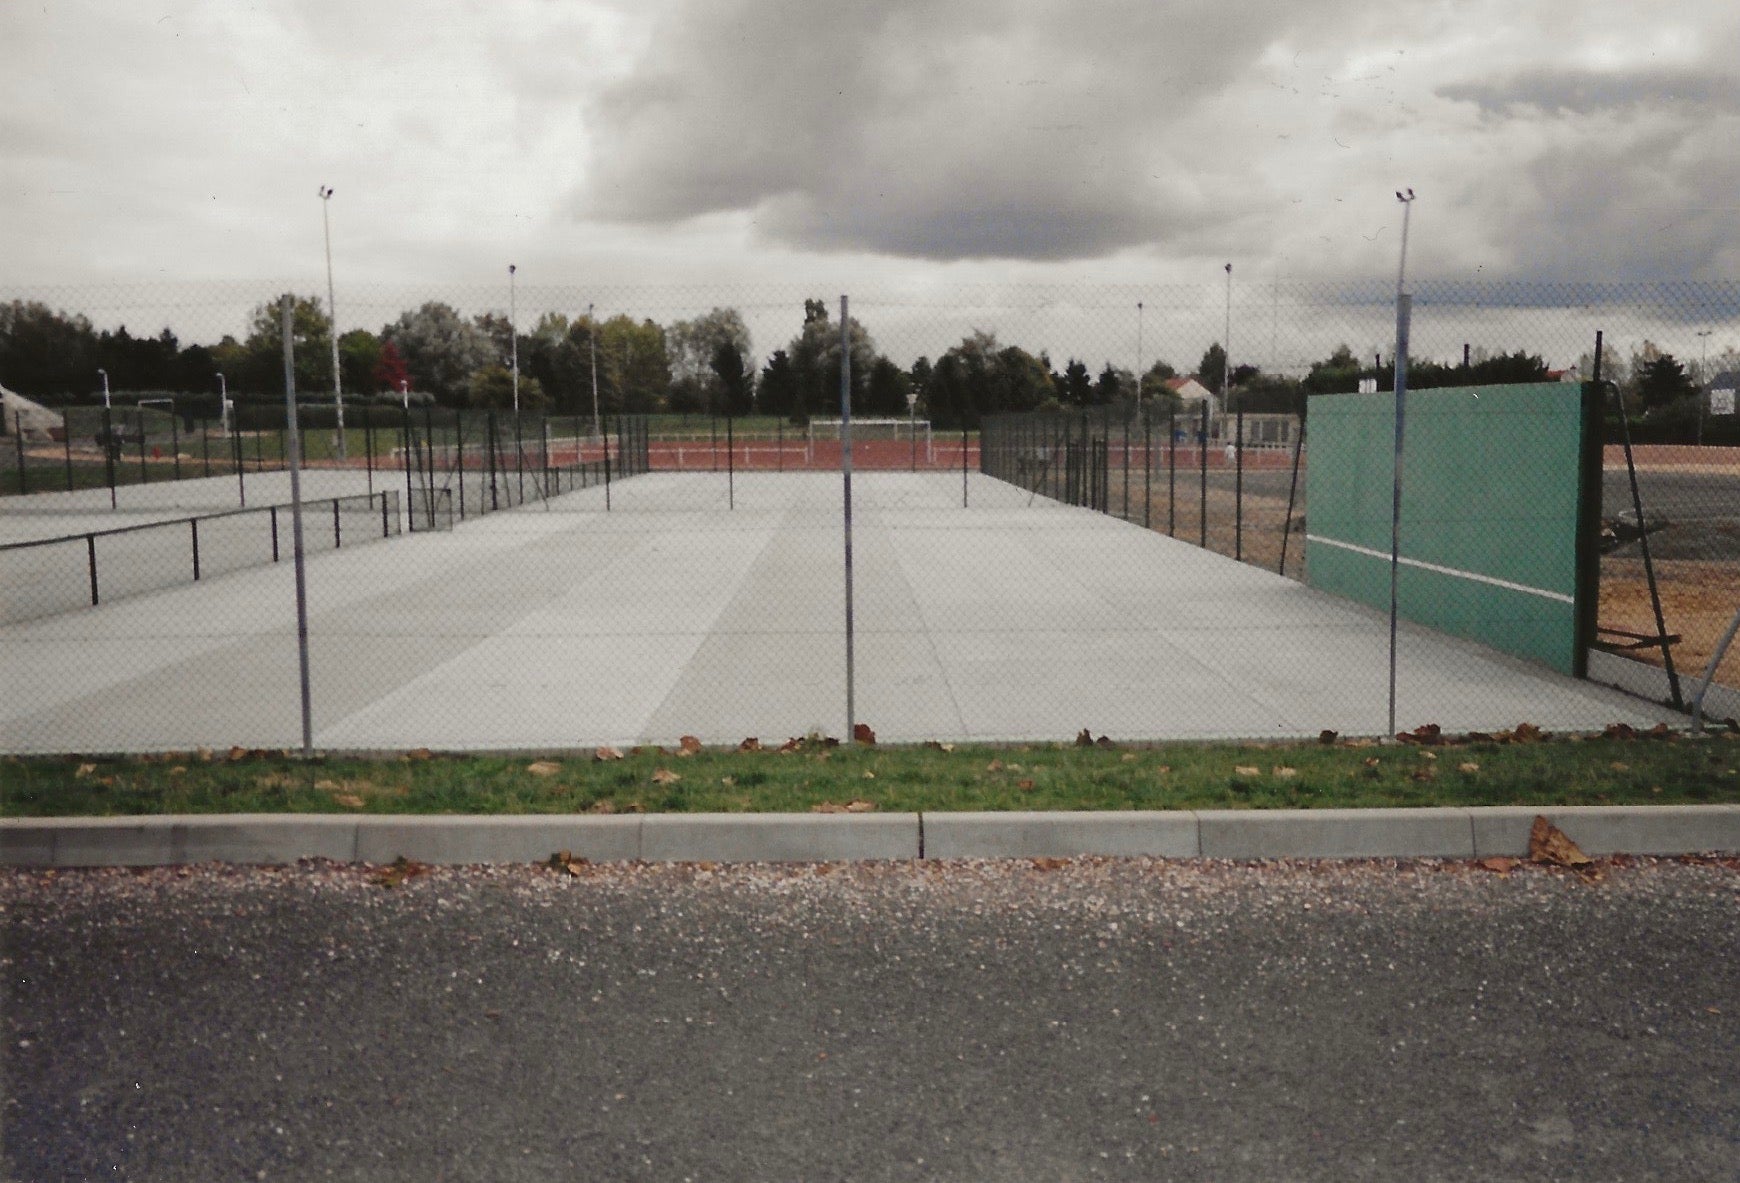  Création de 4 Courts de Tennis